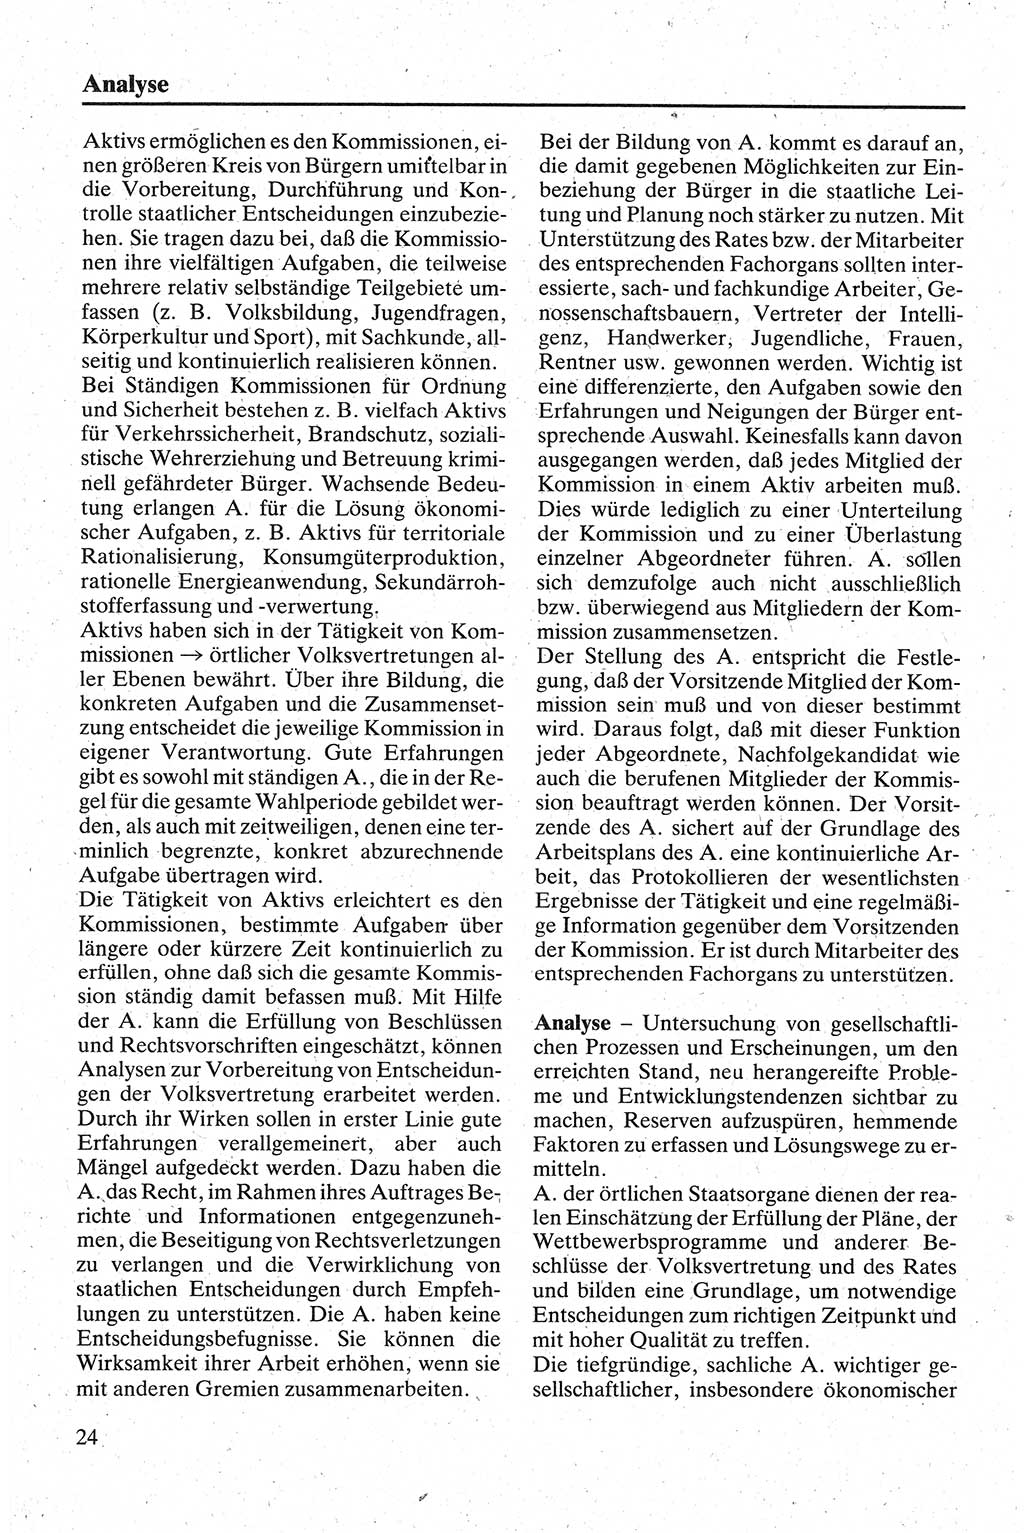 Handbuch für den Abgeordneten [Deutsche Demokratische Republik (DDR)] 1984, Seite 24 (Hb. Abg. DDR 1984, S. 24)